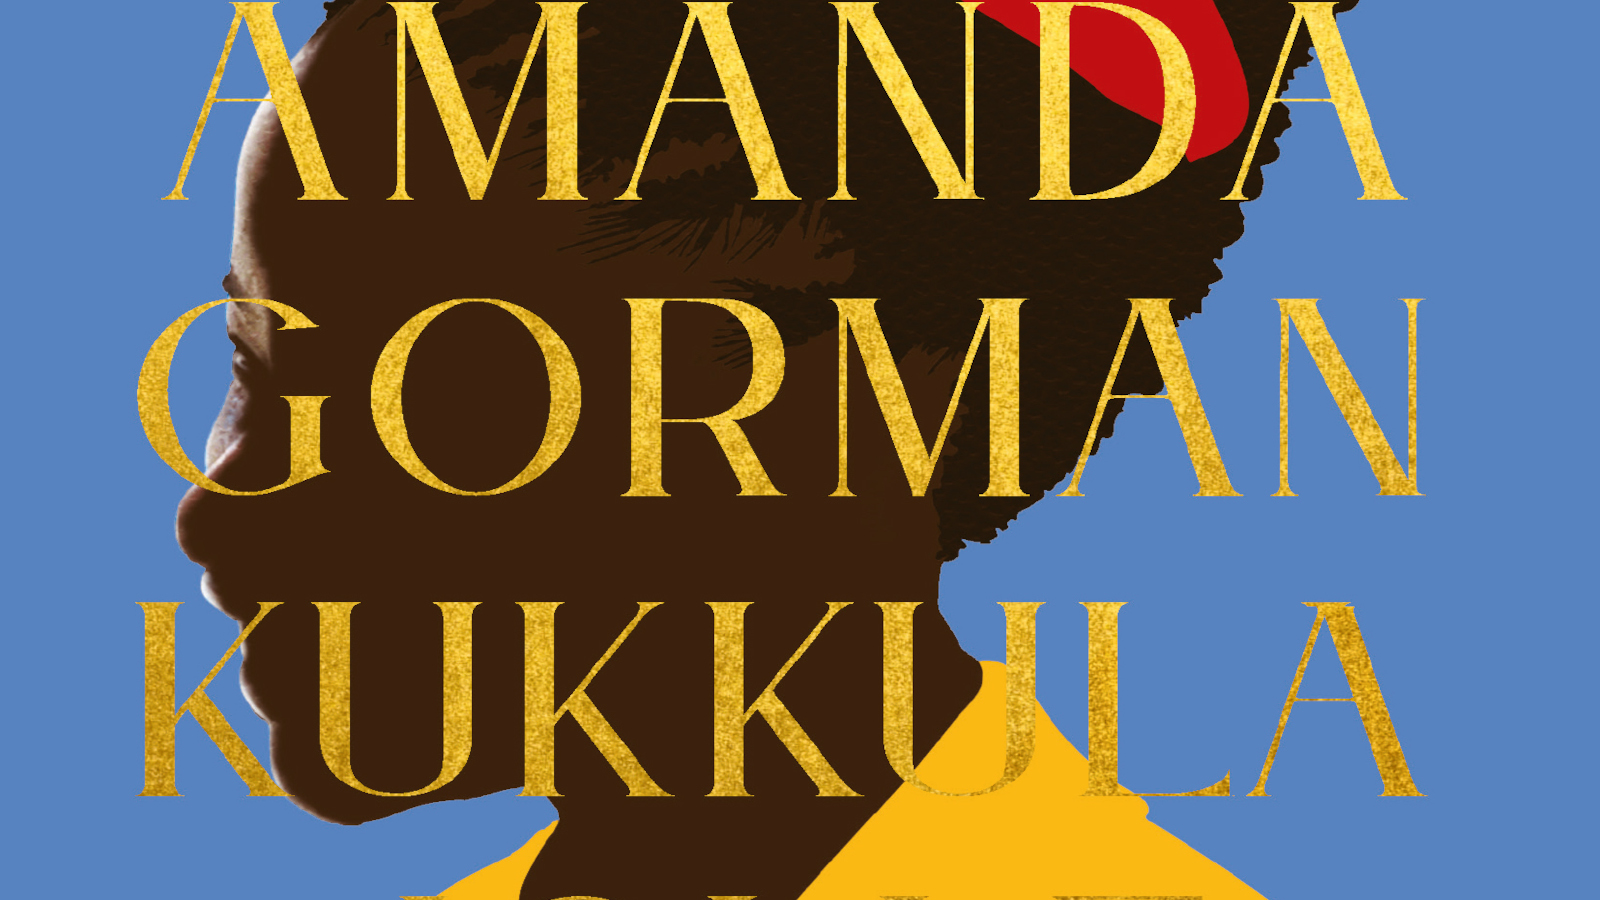 Kesän 2021 Kaunokirjallisuuden suosittuja kirjoja on Amanda Gormanin runokirja Kukkula jolle kiipeämme.